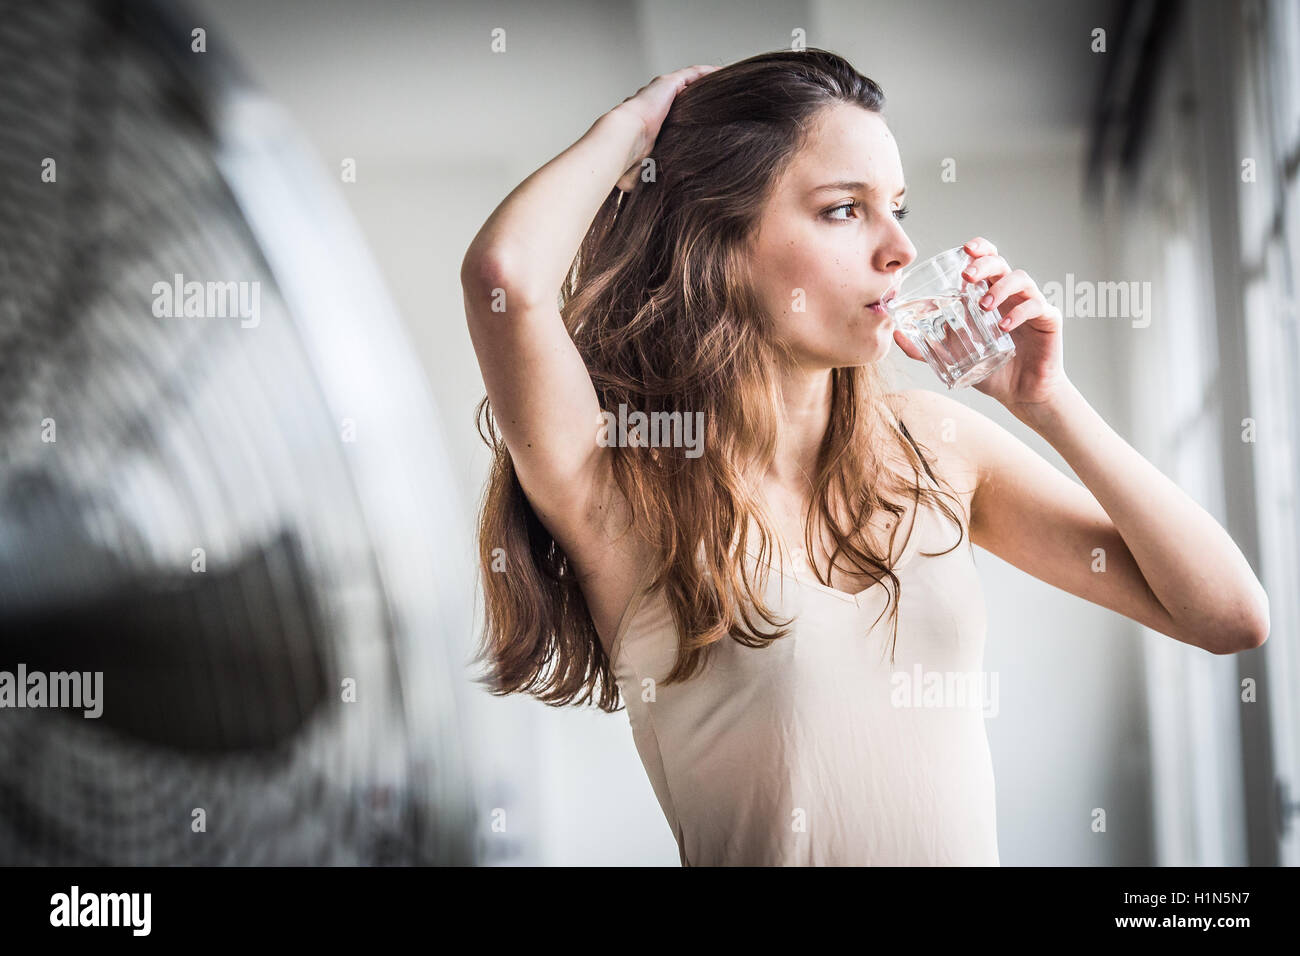 Junge Frau vor elektrischen Ventilator. Stockfoto